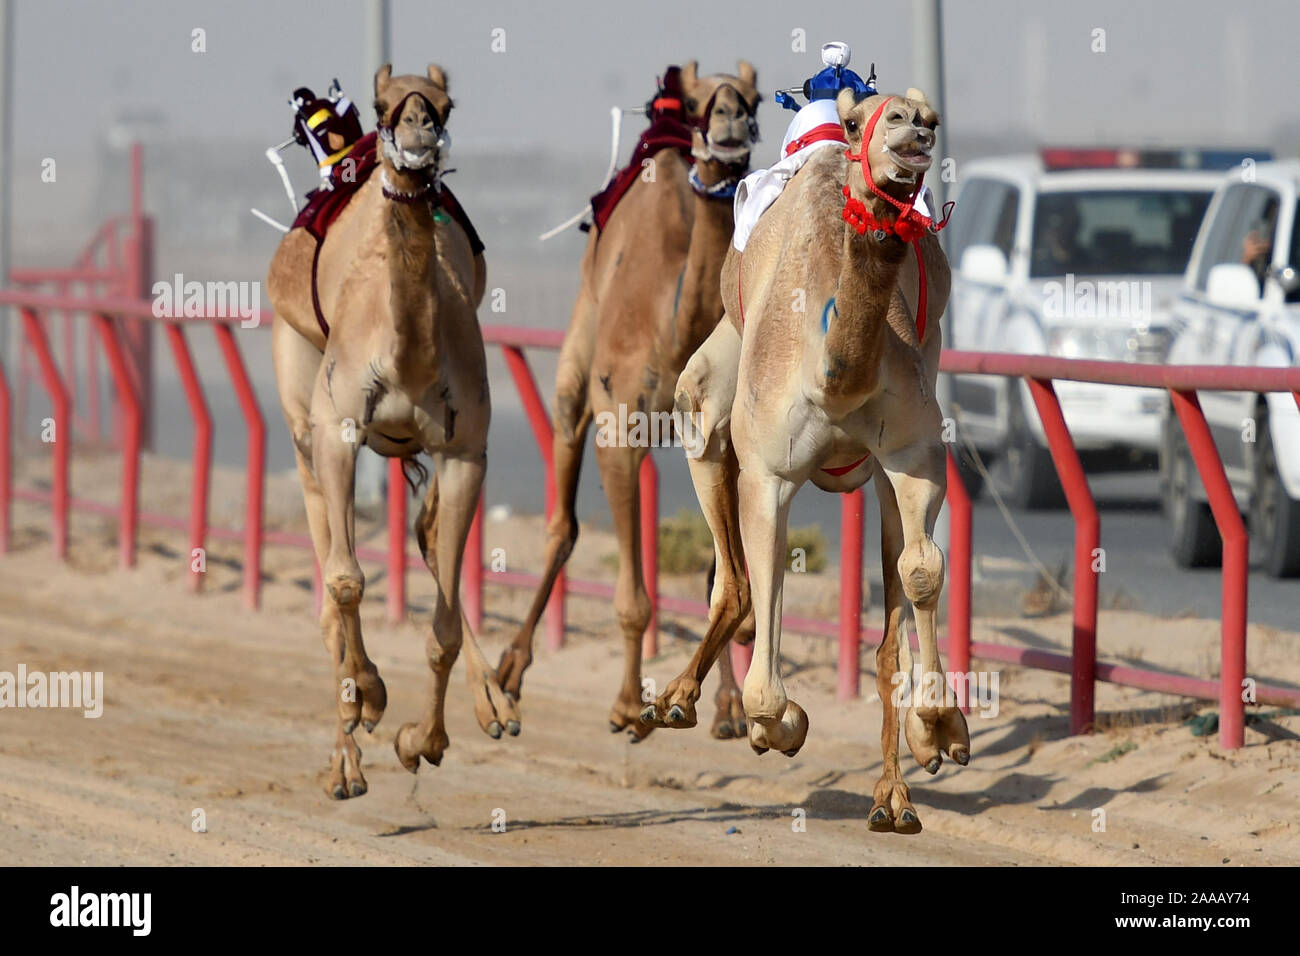 Le Gouvernorat d'Al Ahmadi, le Koweït. 20 Nov, 2019. Chameaux avec robot-jockeys sur leur dos en concurrence au cours de la sixième tournoi de courses de chameaux dans le gouvernorat d'Al Ahmadi, le Koweït, le 20 novembre, 2019. Credit : Ghazy Qaffaf/Xinhua/Alamy Live News Banque D'Images